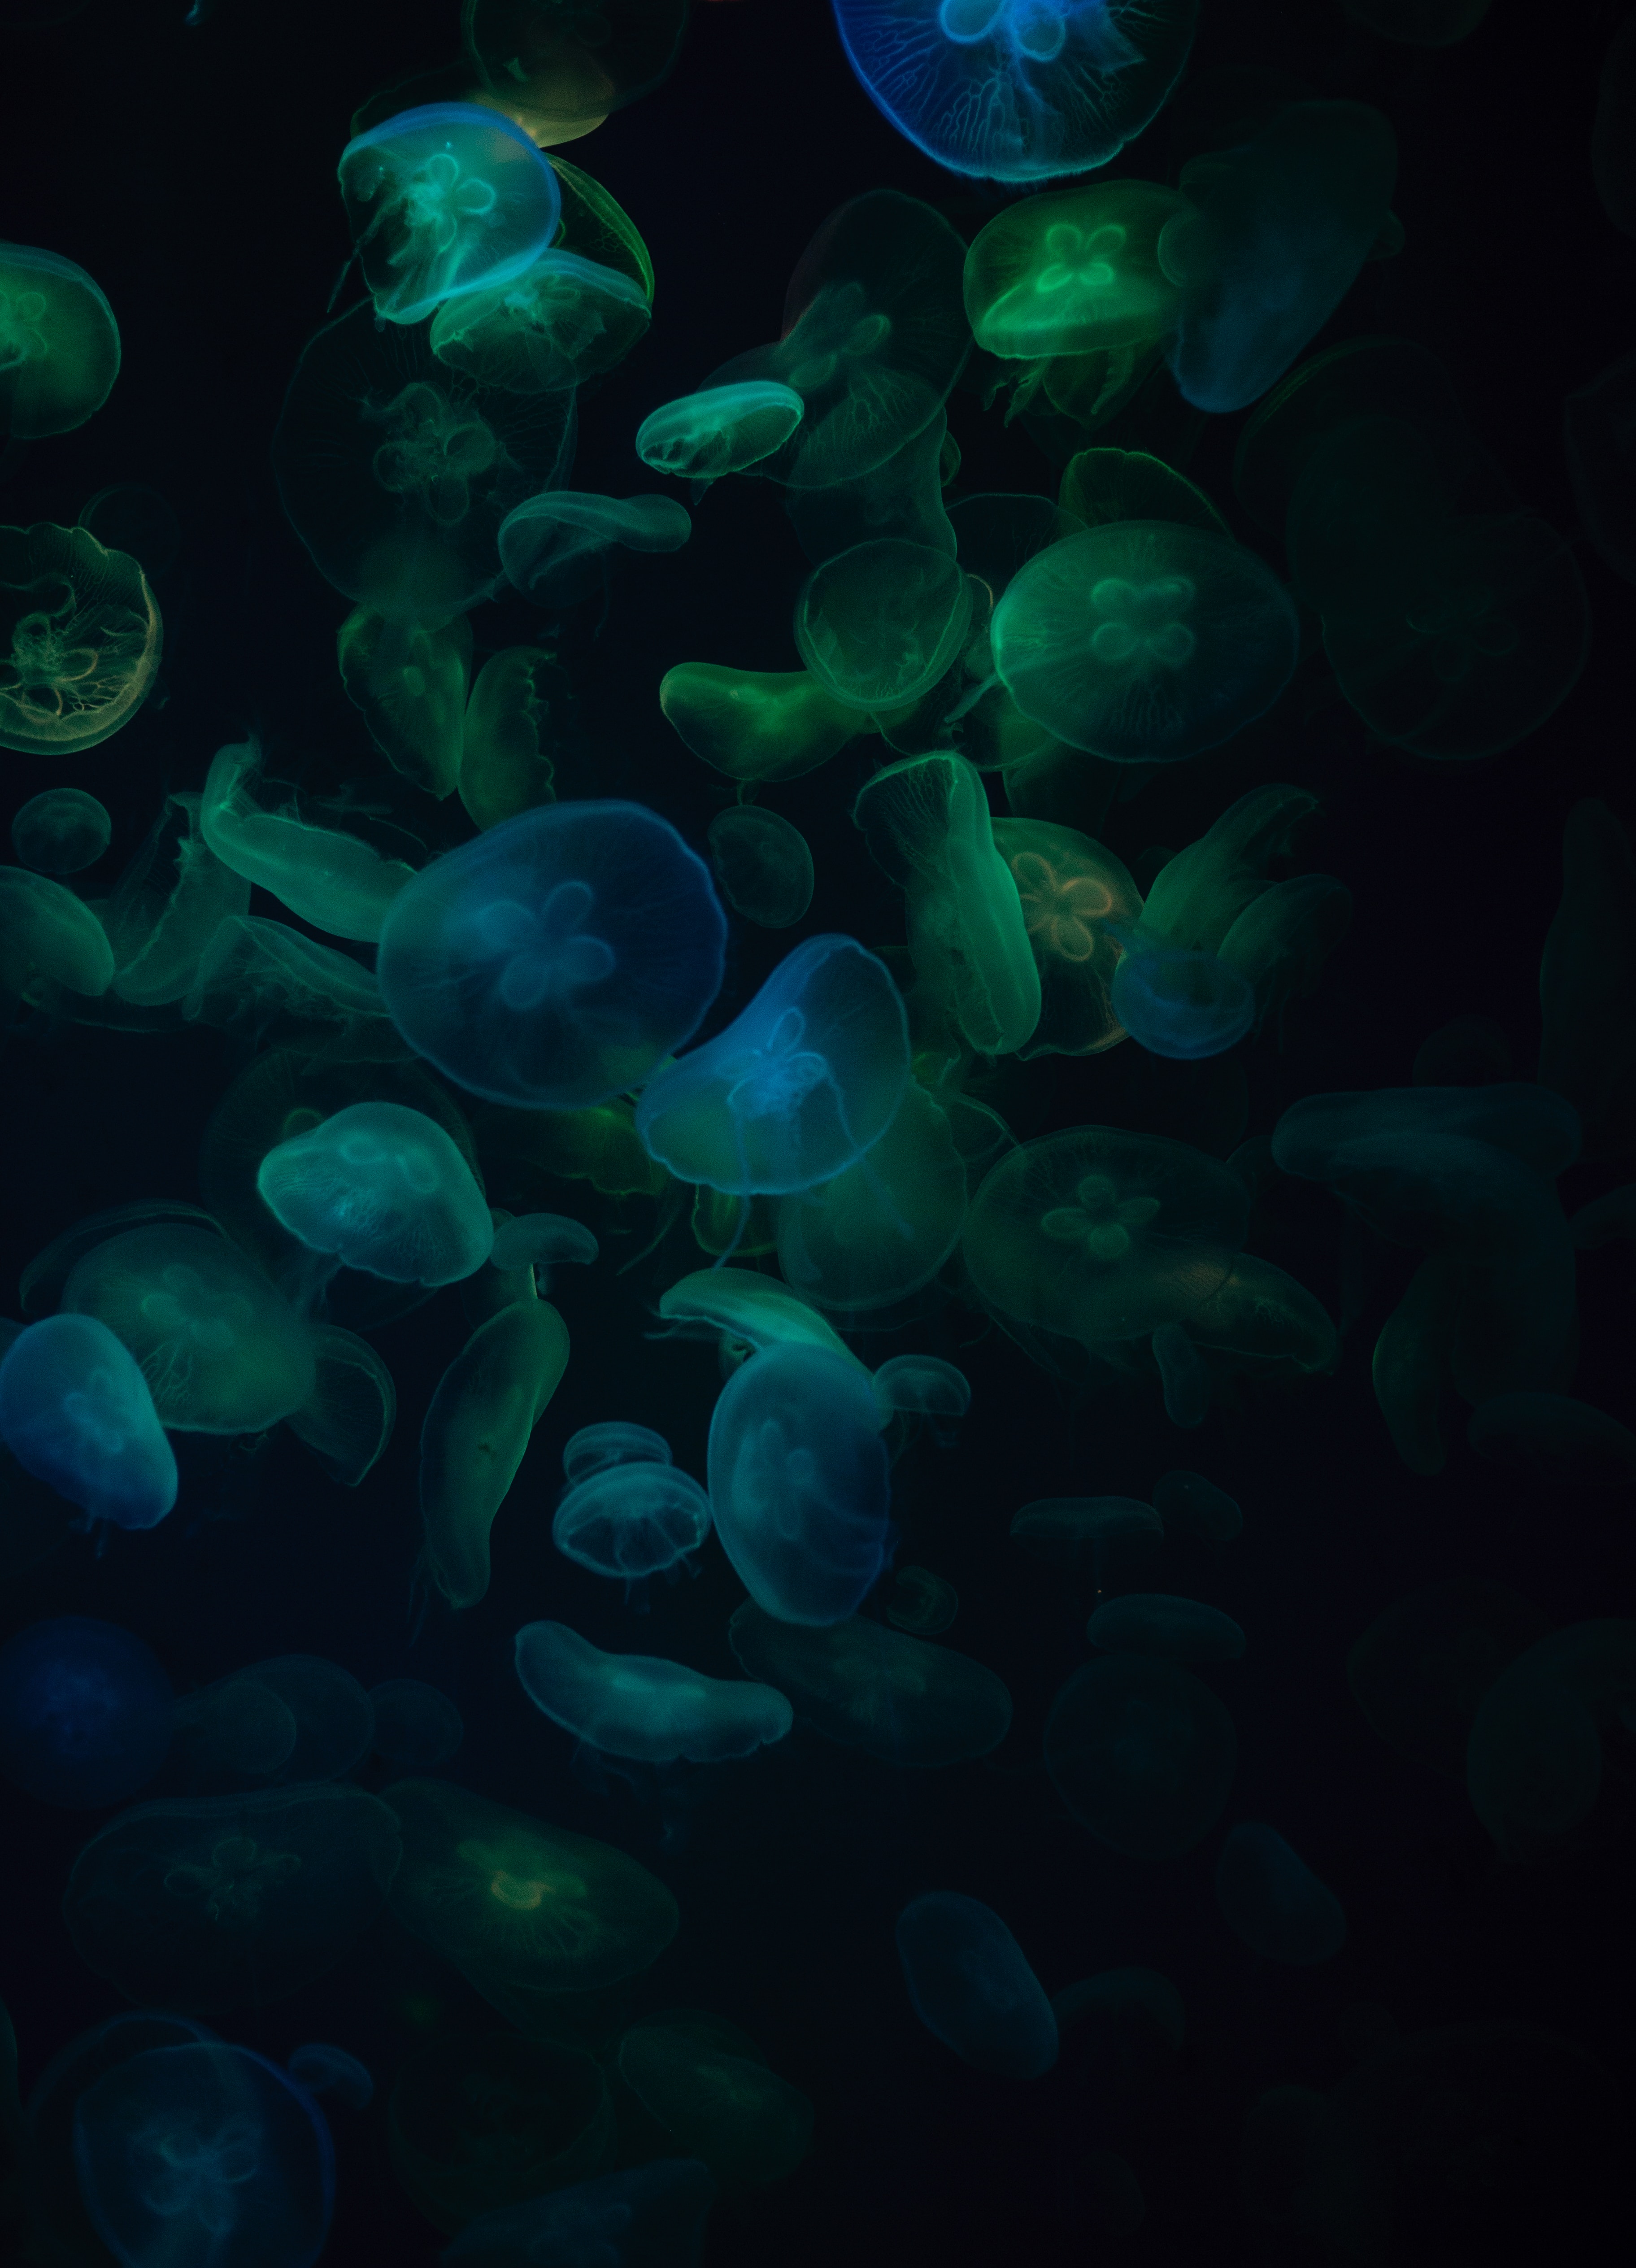 animals, jellyfish, transparent, dark, underwater world